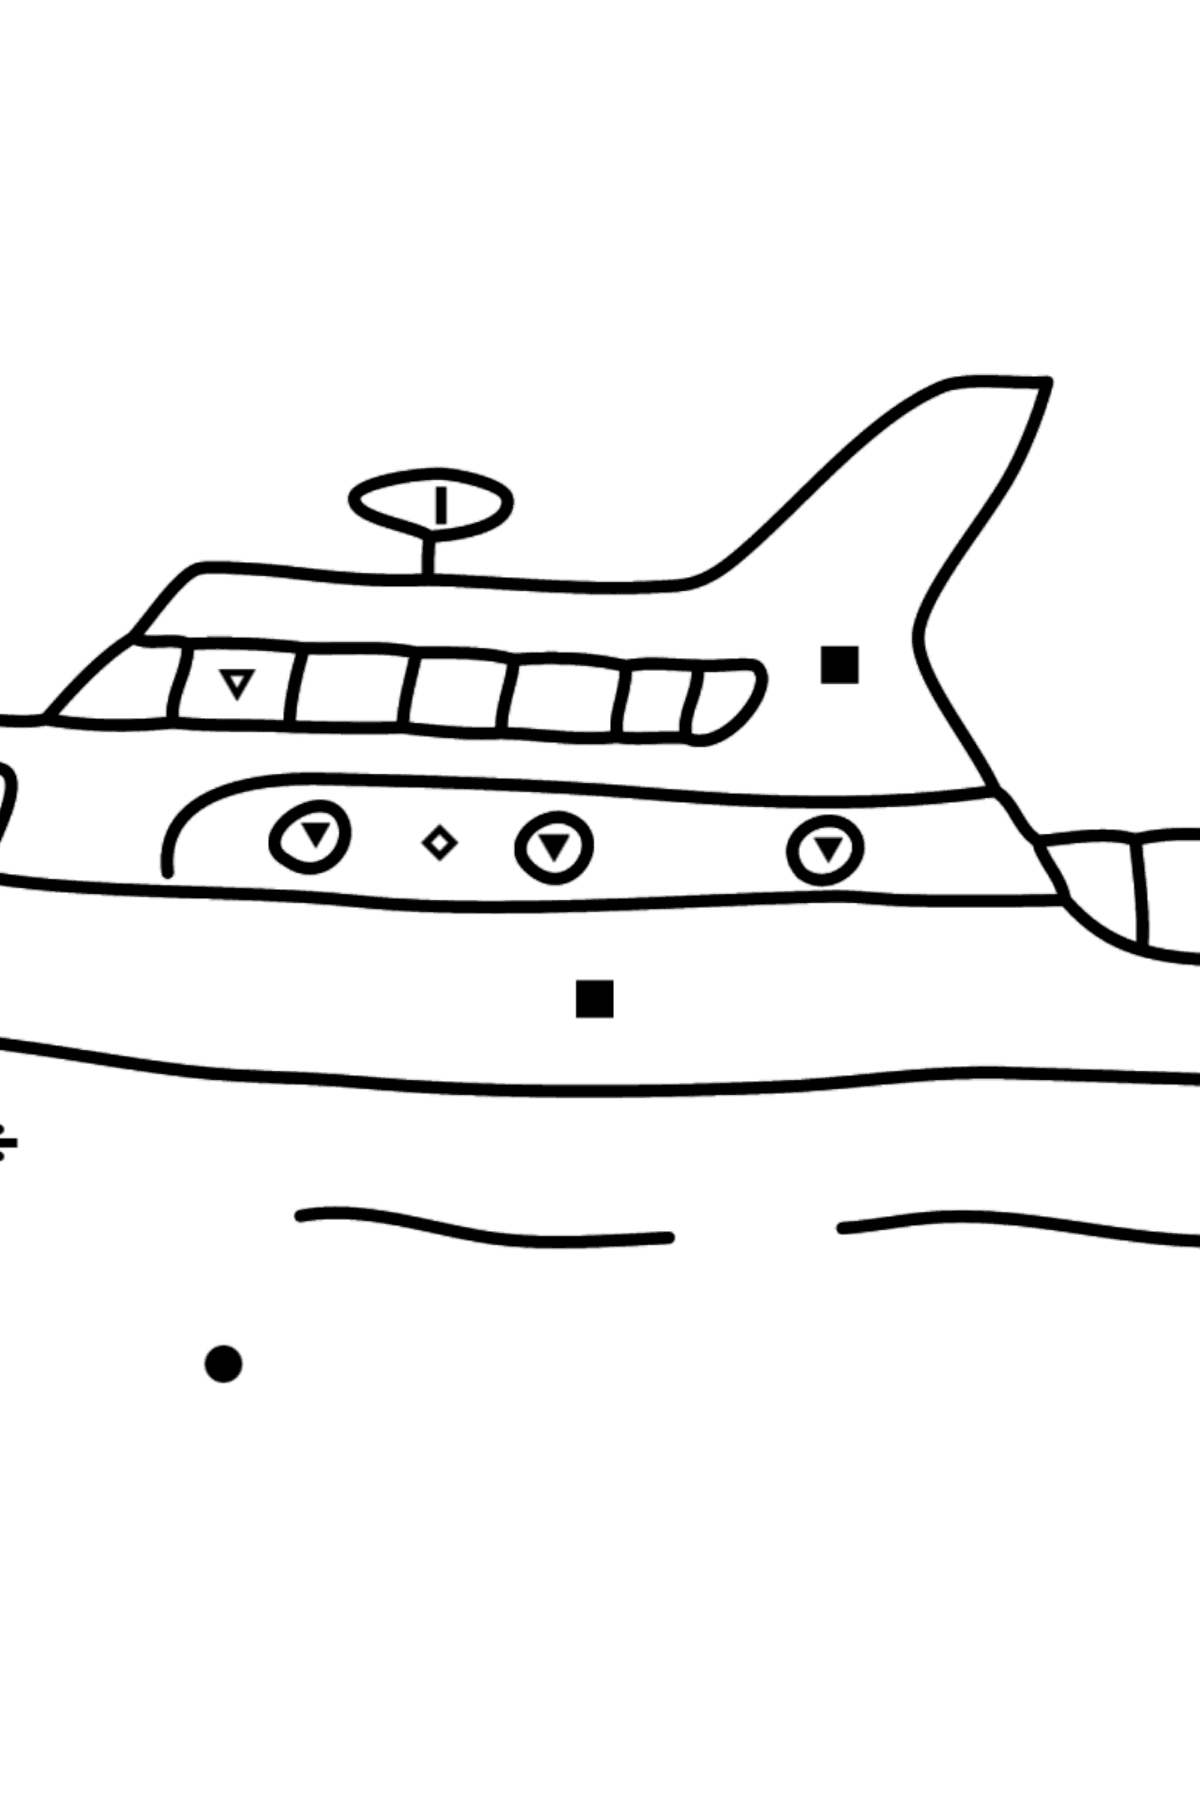 Раскраска прогулочная яхта - По Символам для Детей